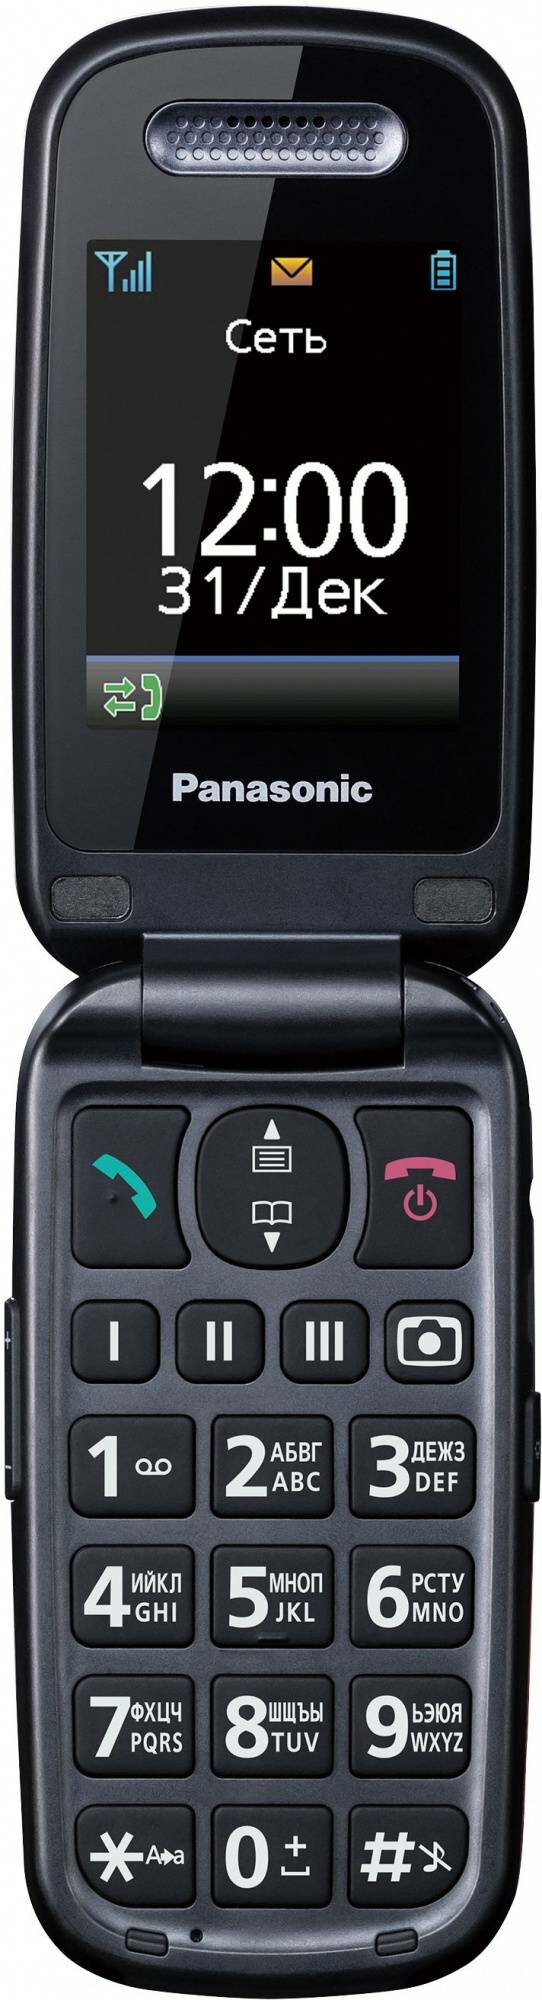 Мобильный телефон Panasonic TU456 черный (kx-tu456rub)